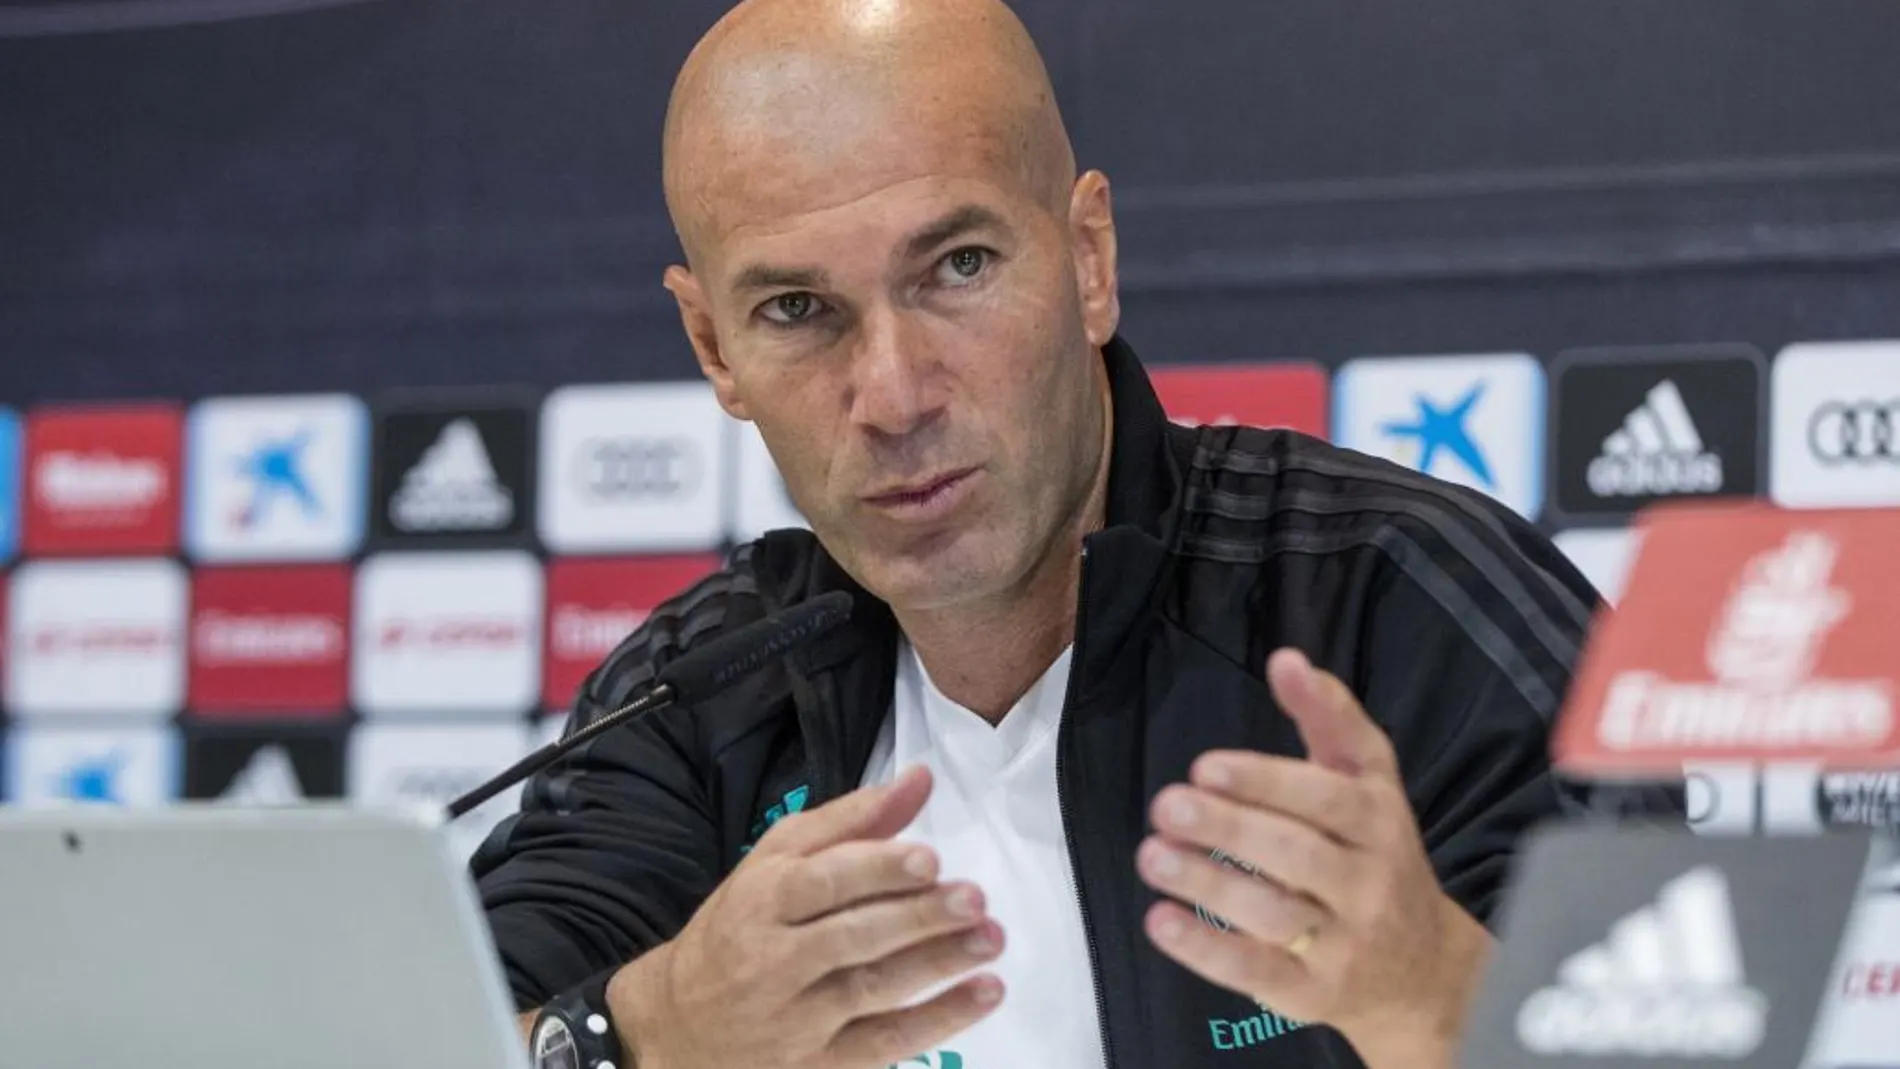 El entrenador francés del Real Madrid Zinedine Zidane, durante la rueda de prensa tras el entrenamiento en la Ciudad deportiva Real Madrid